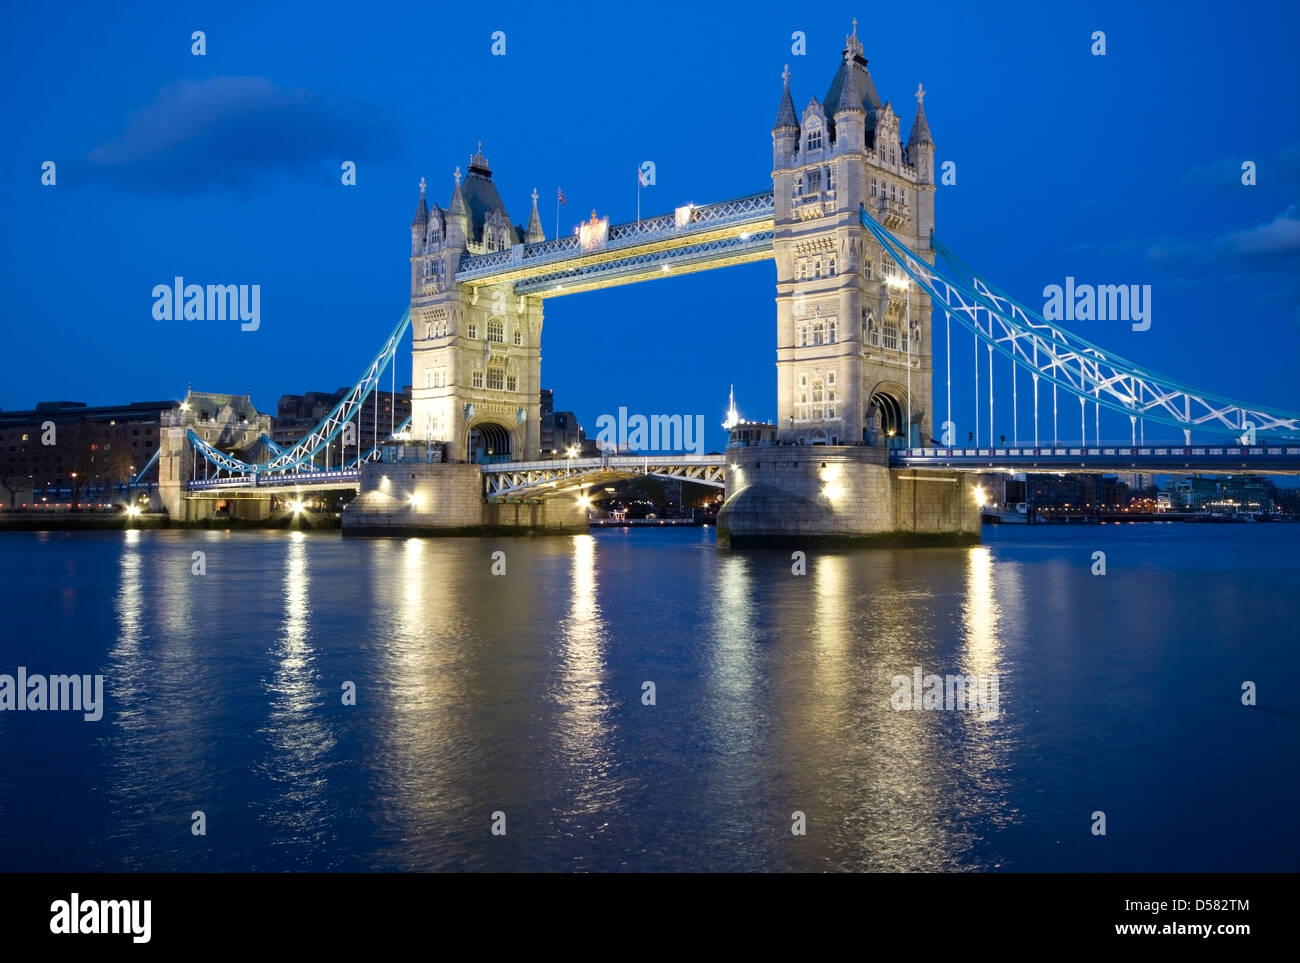 Monde célèbre Tower Bridge lit up at night, City of London Banque D'Images